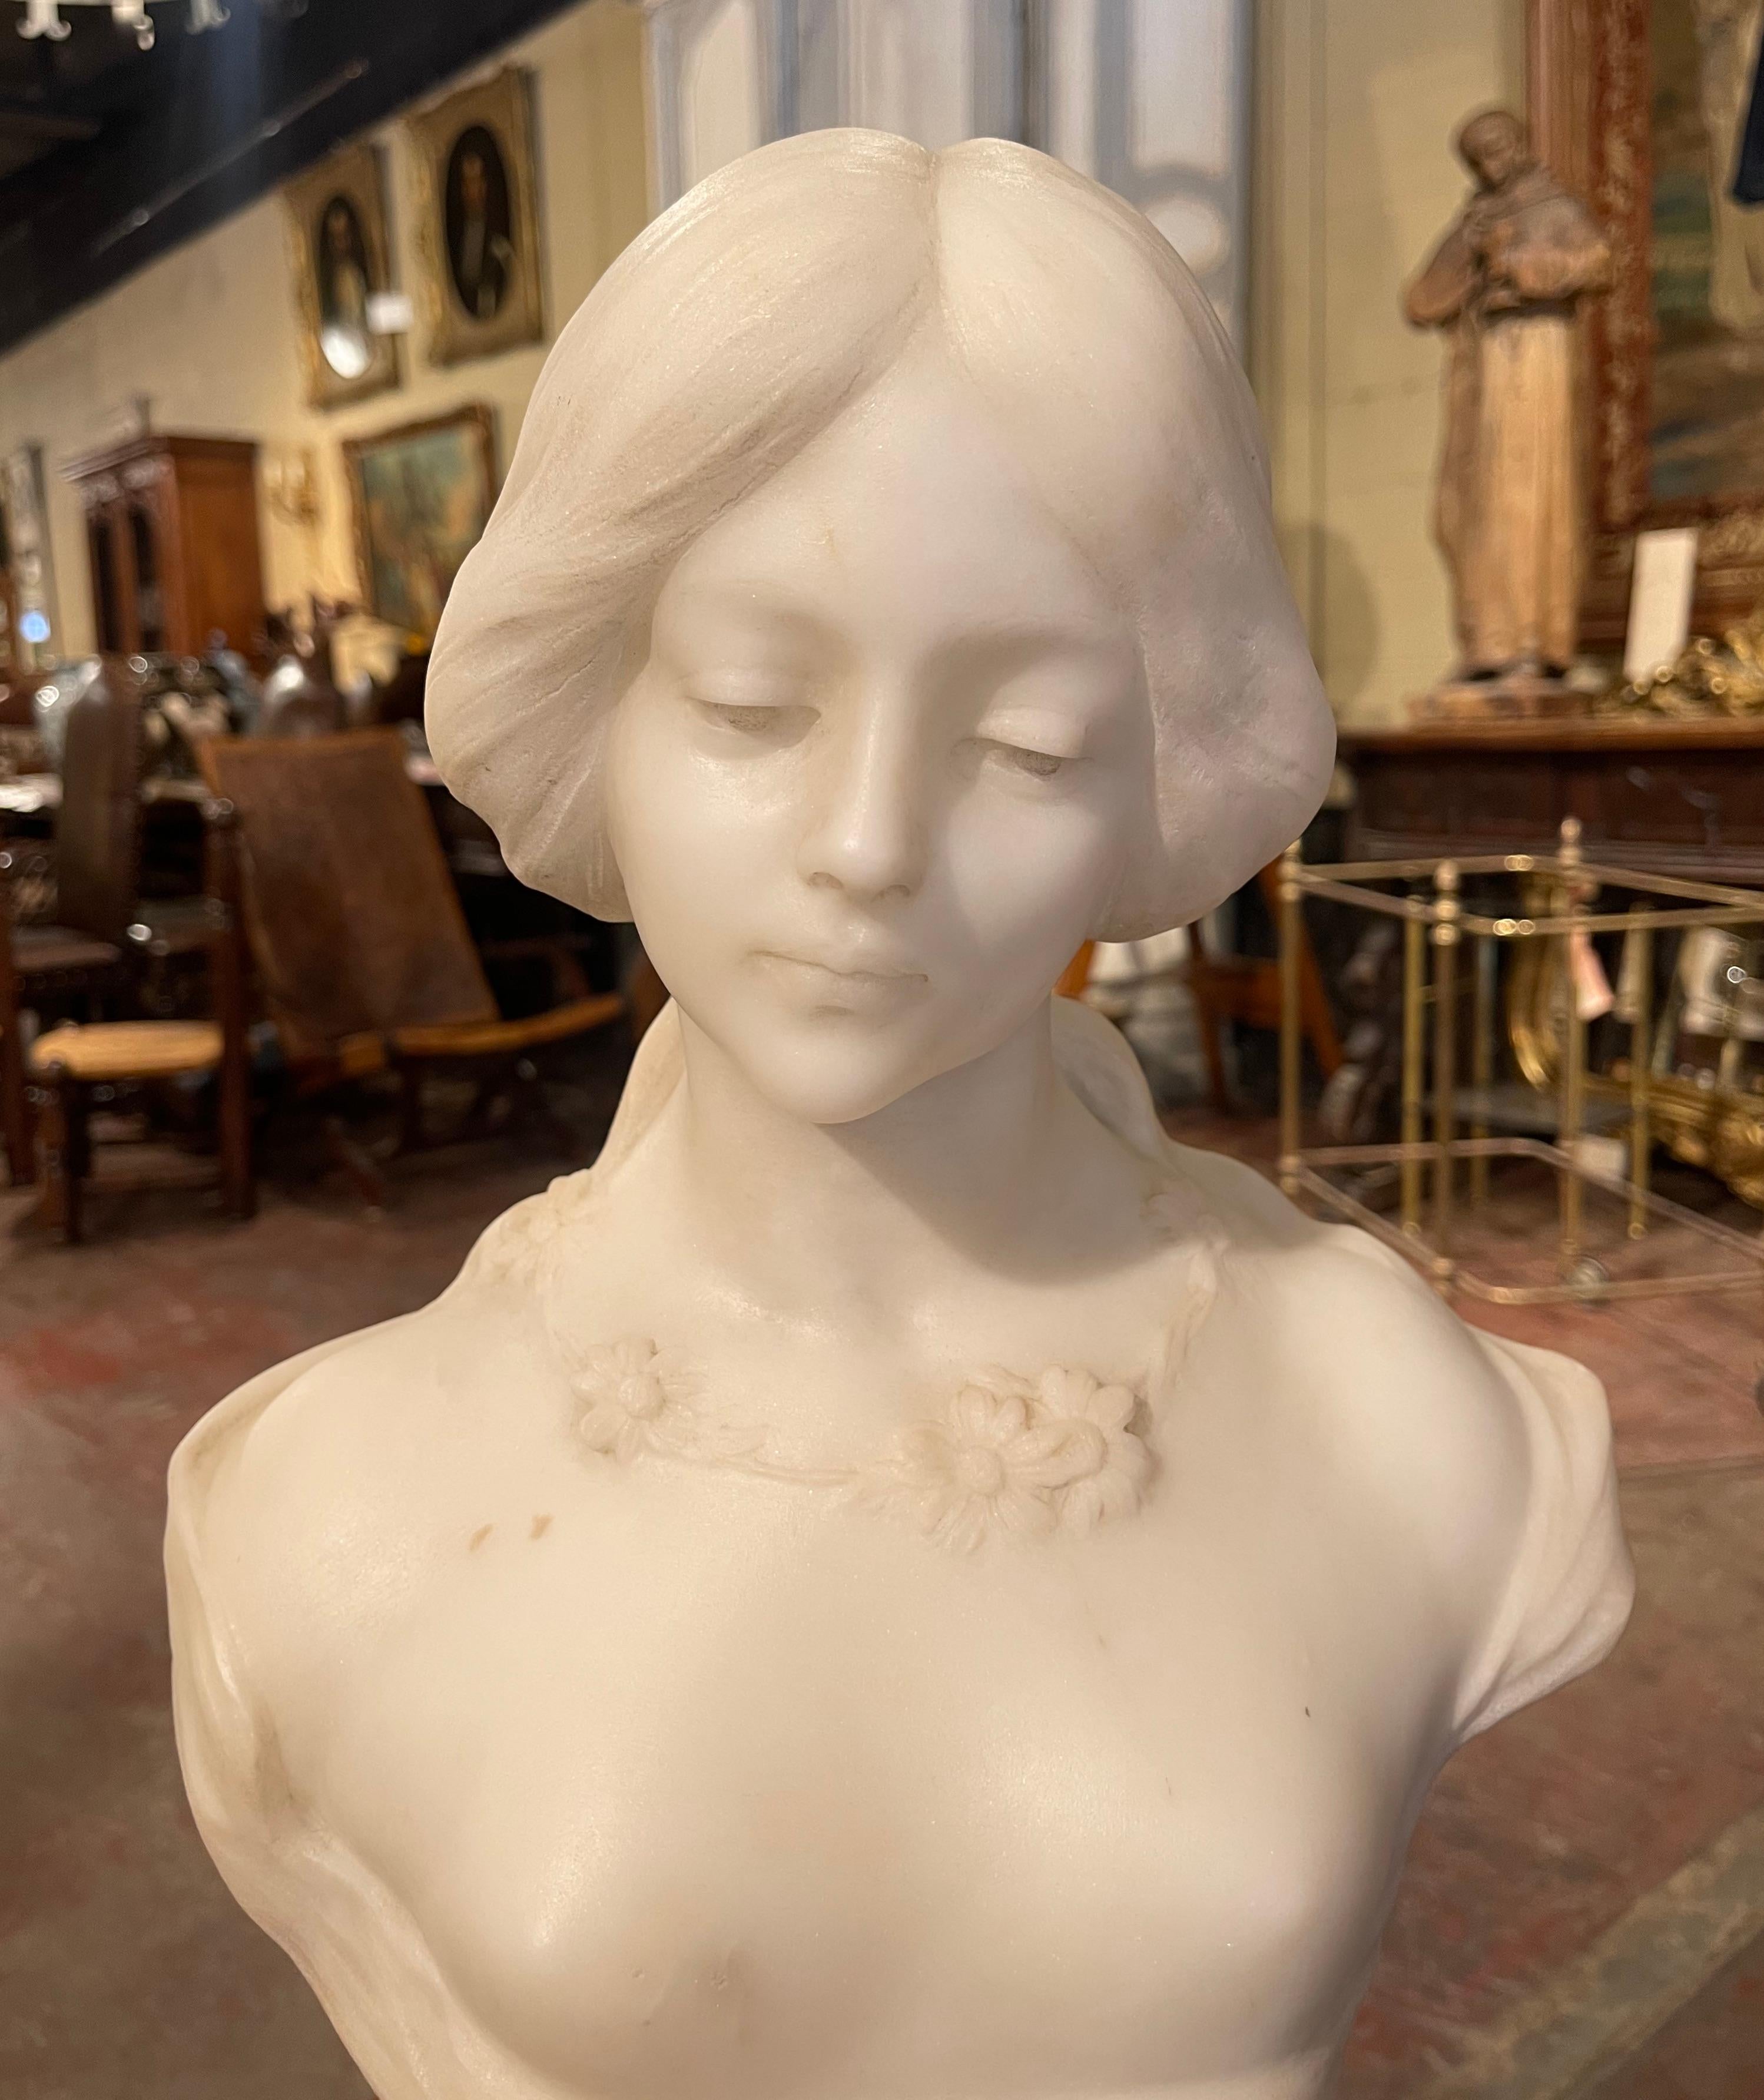 Fabriqué en France vers 1920, ce buste en marbre blanc en deux parties sur une base en quartz est une véritable représentation de l'élégance française. La sculpture figurative représente le visage d'une belle jeune fille vêtue d'une robe en dentelle